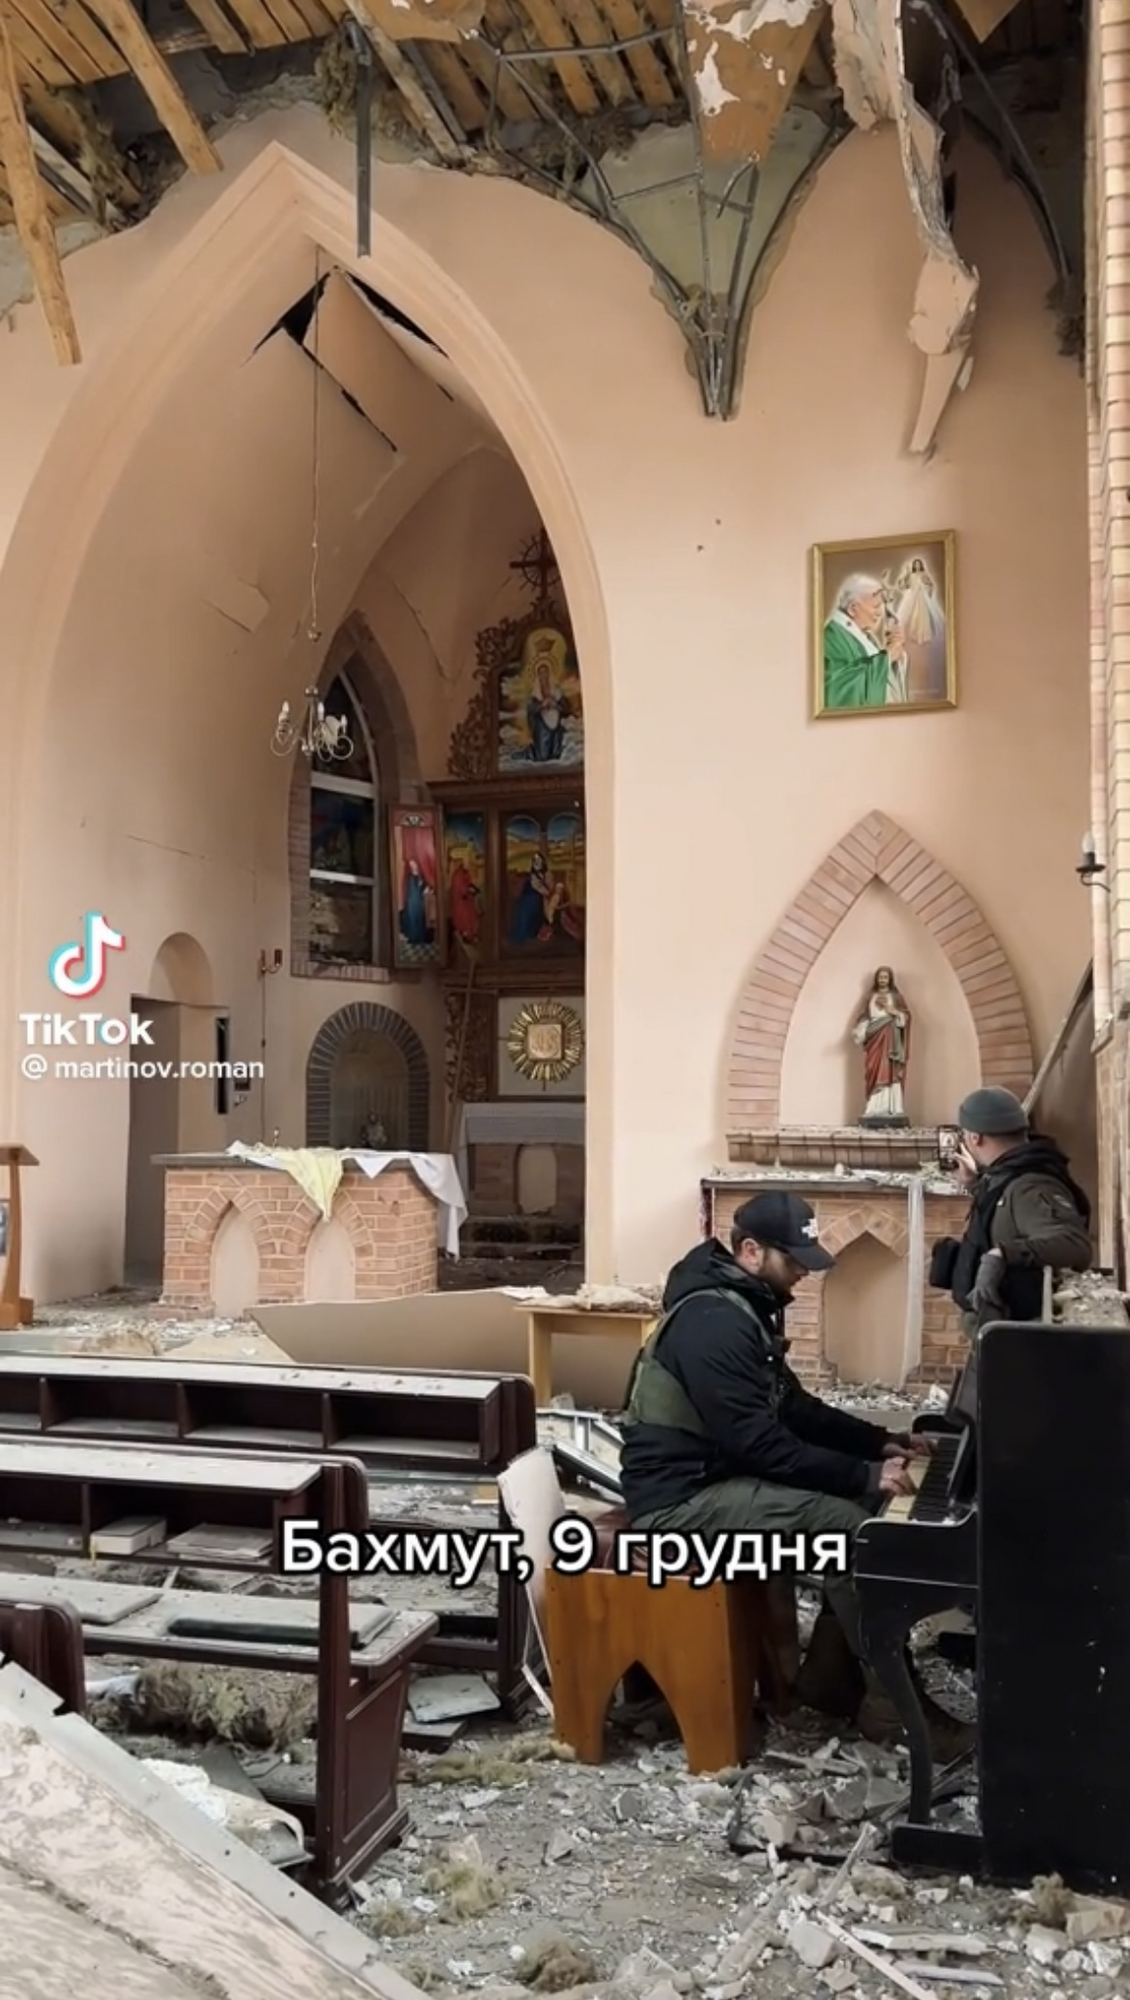 Военный сыграл на фортепиано в разрушенной церкви Бахмута. Видео покорило сеть